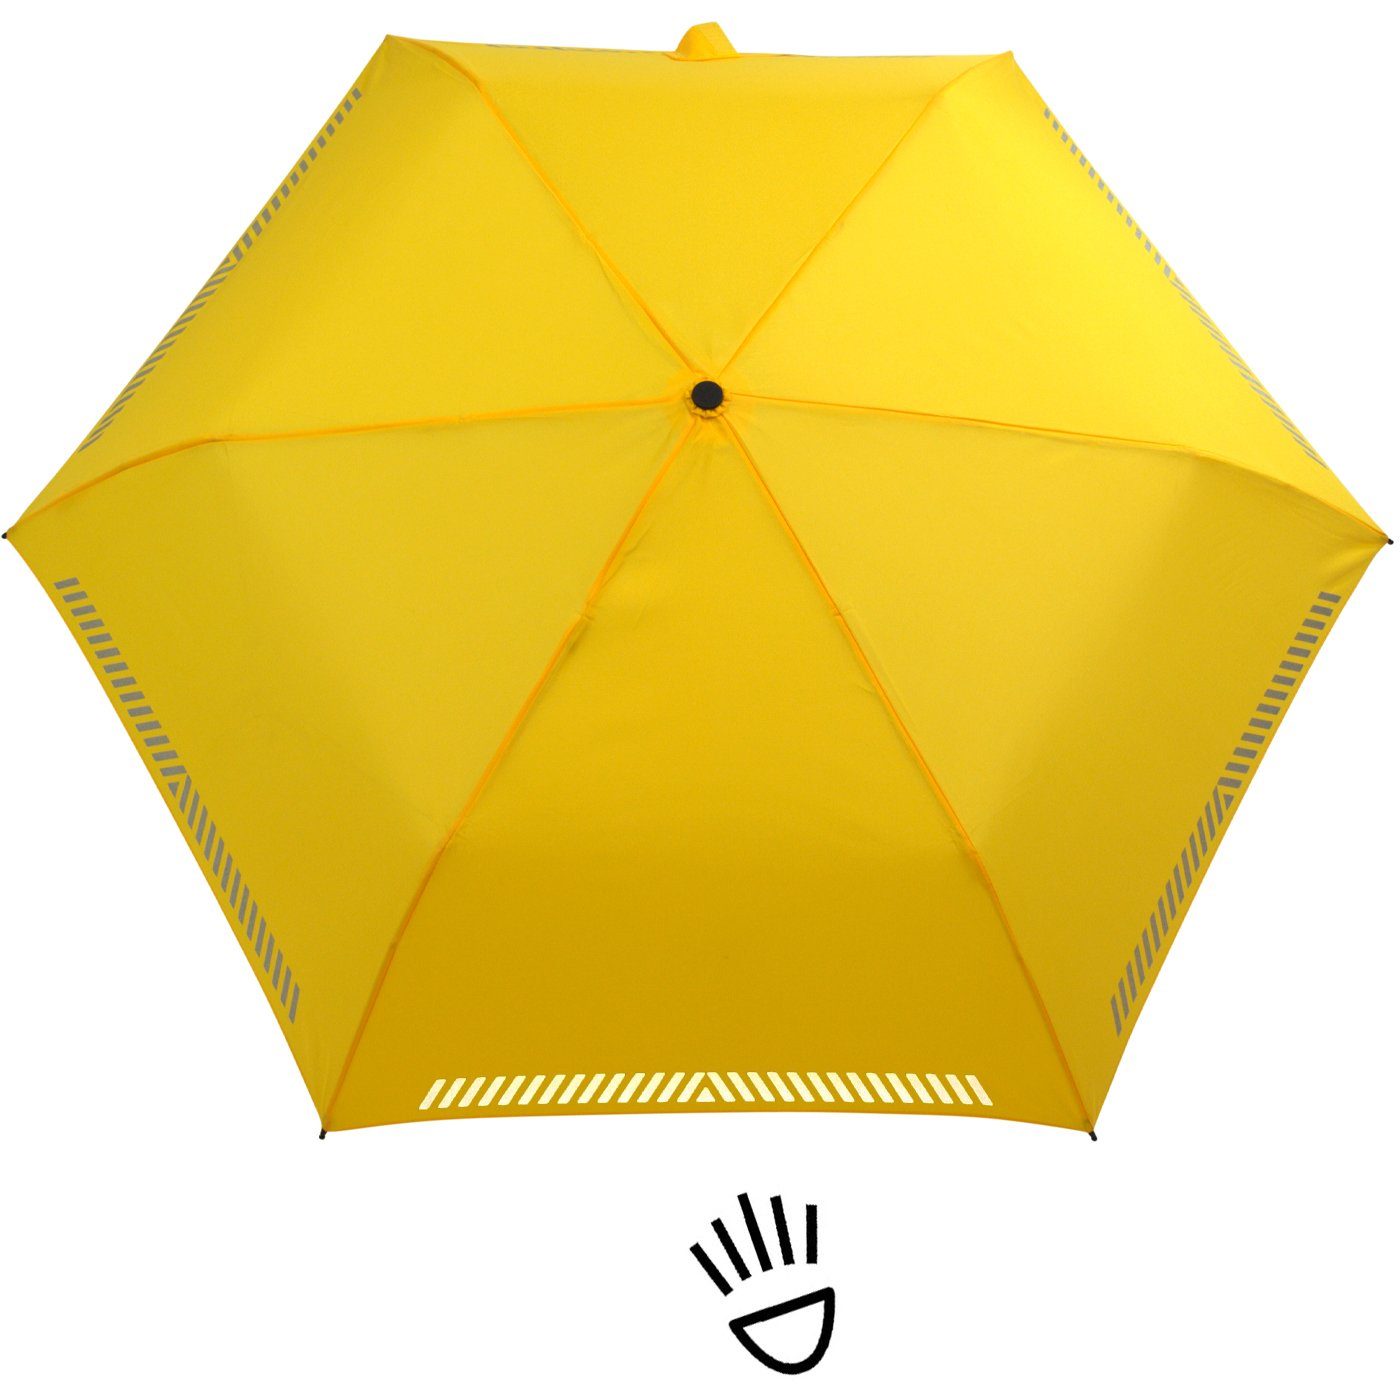 iX-brella Taschenregenschirm Kinderschirm mit Auf-Zu-Automatik, gelb - Reflex-Streifen Sicherheit durch reflektierend